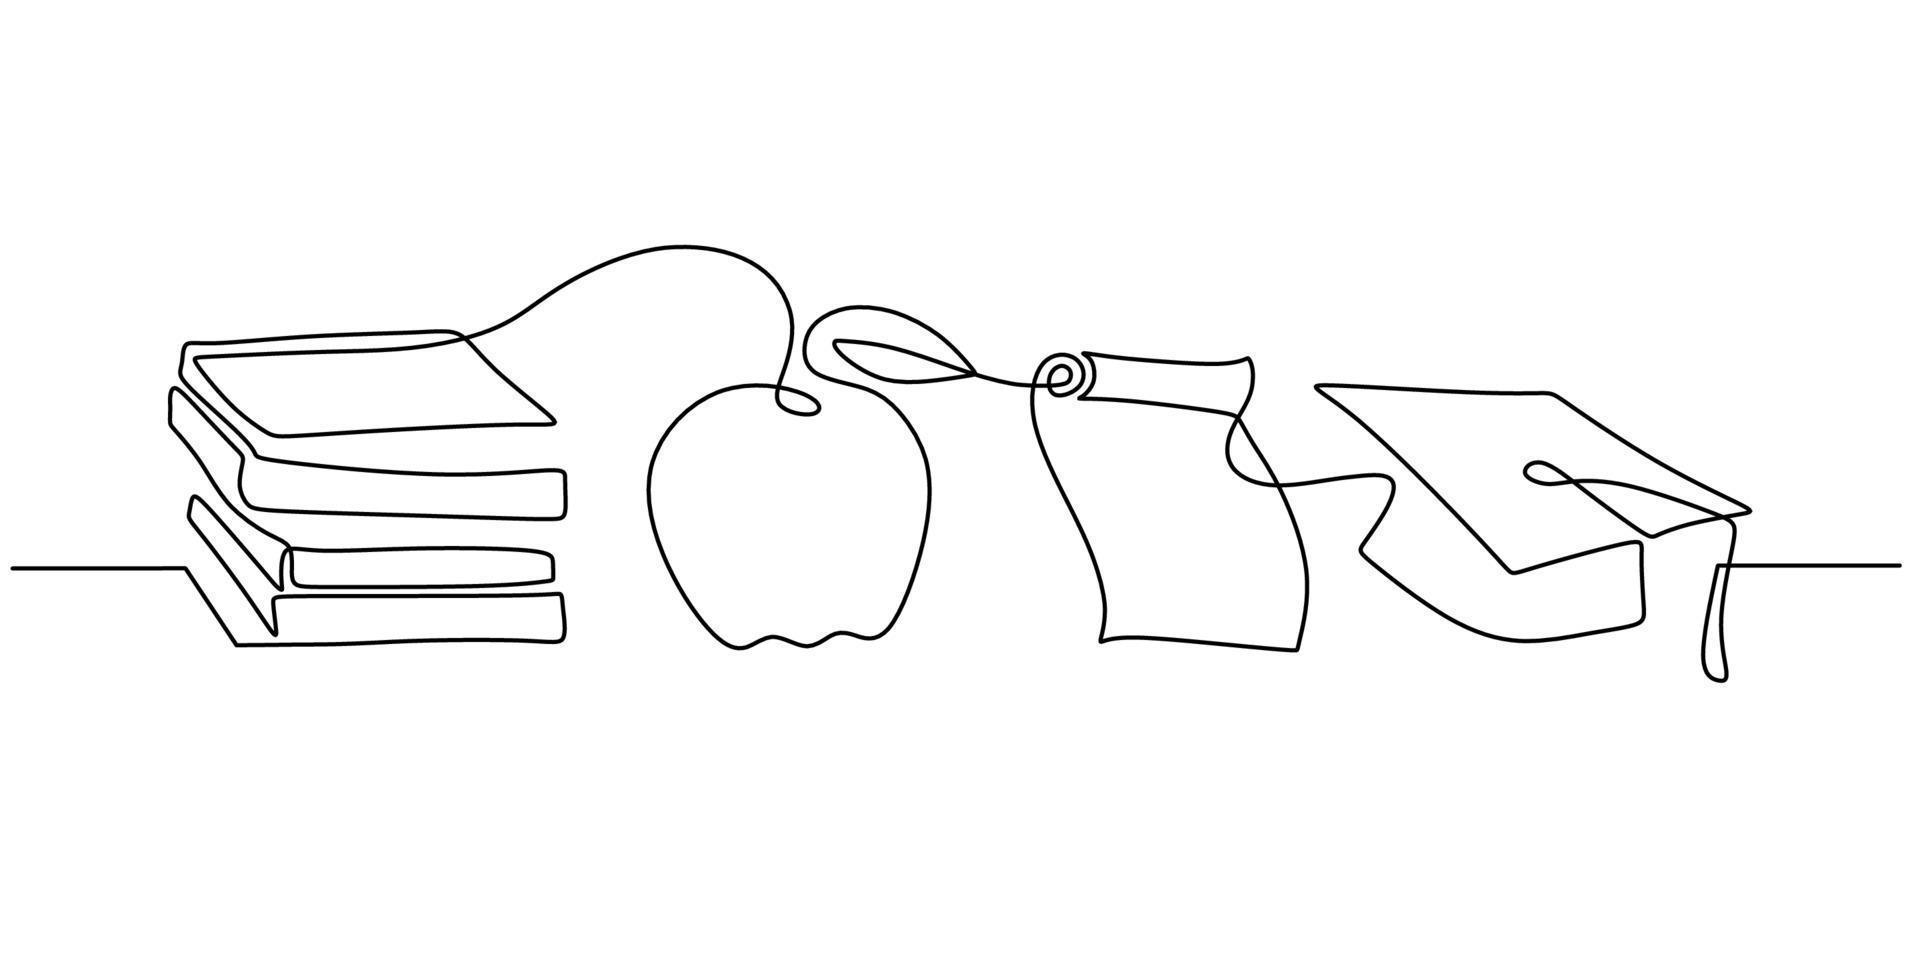 doorlopend een enkele regel boek, appel, papier en afstudeerhoed vector